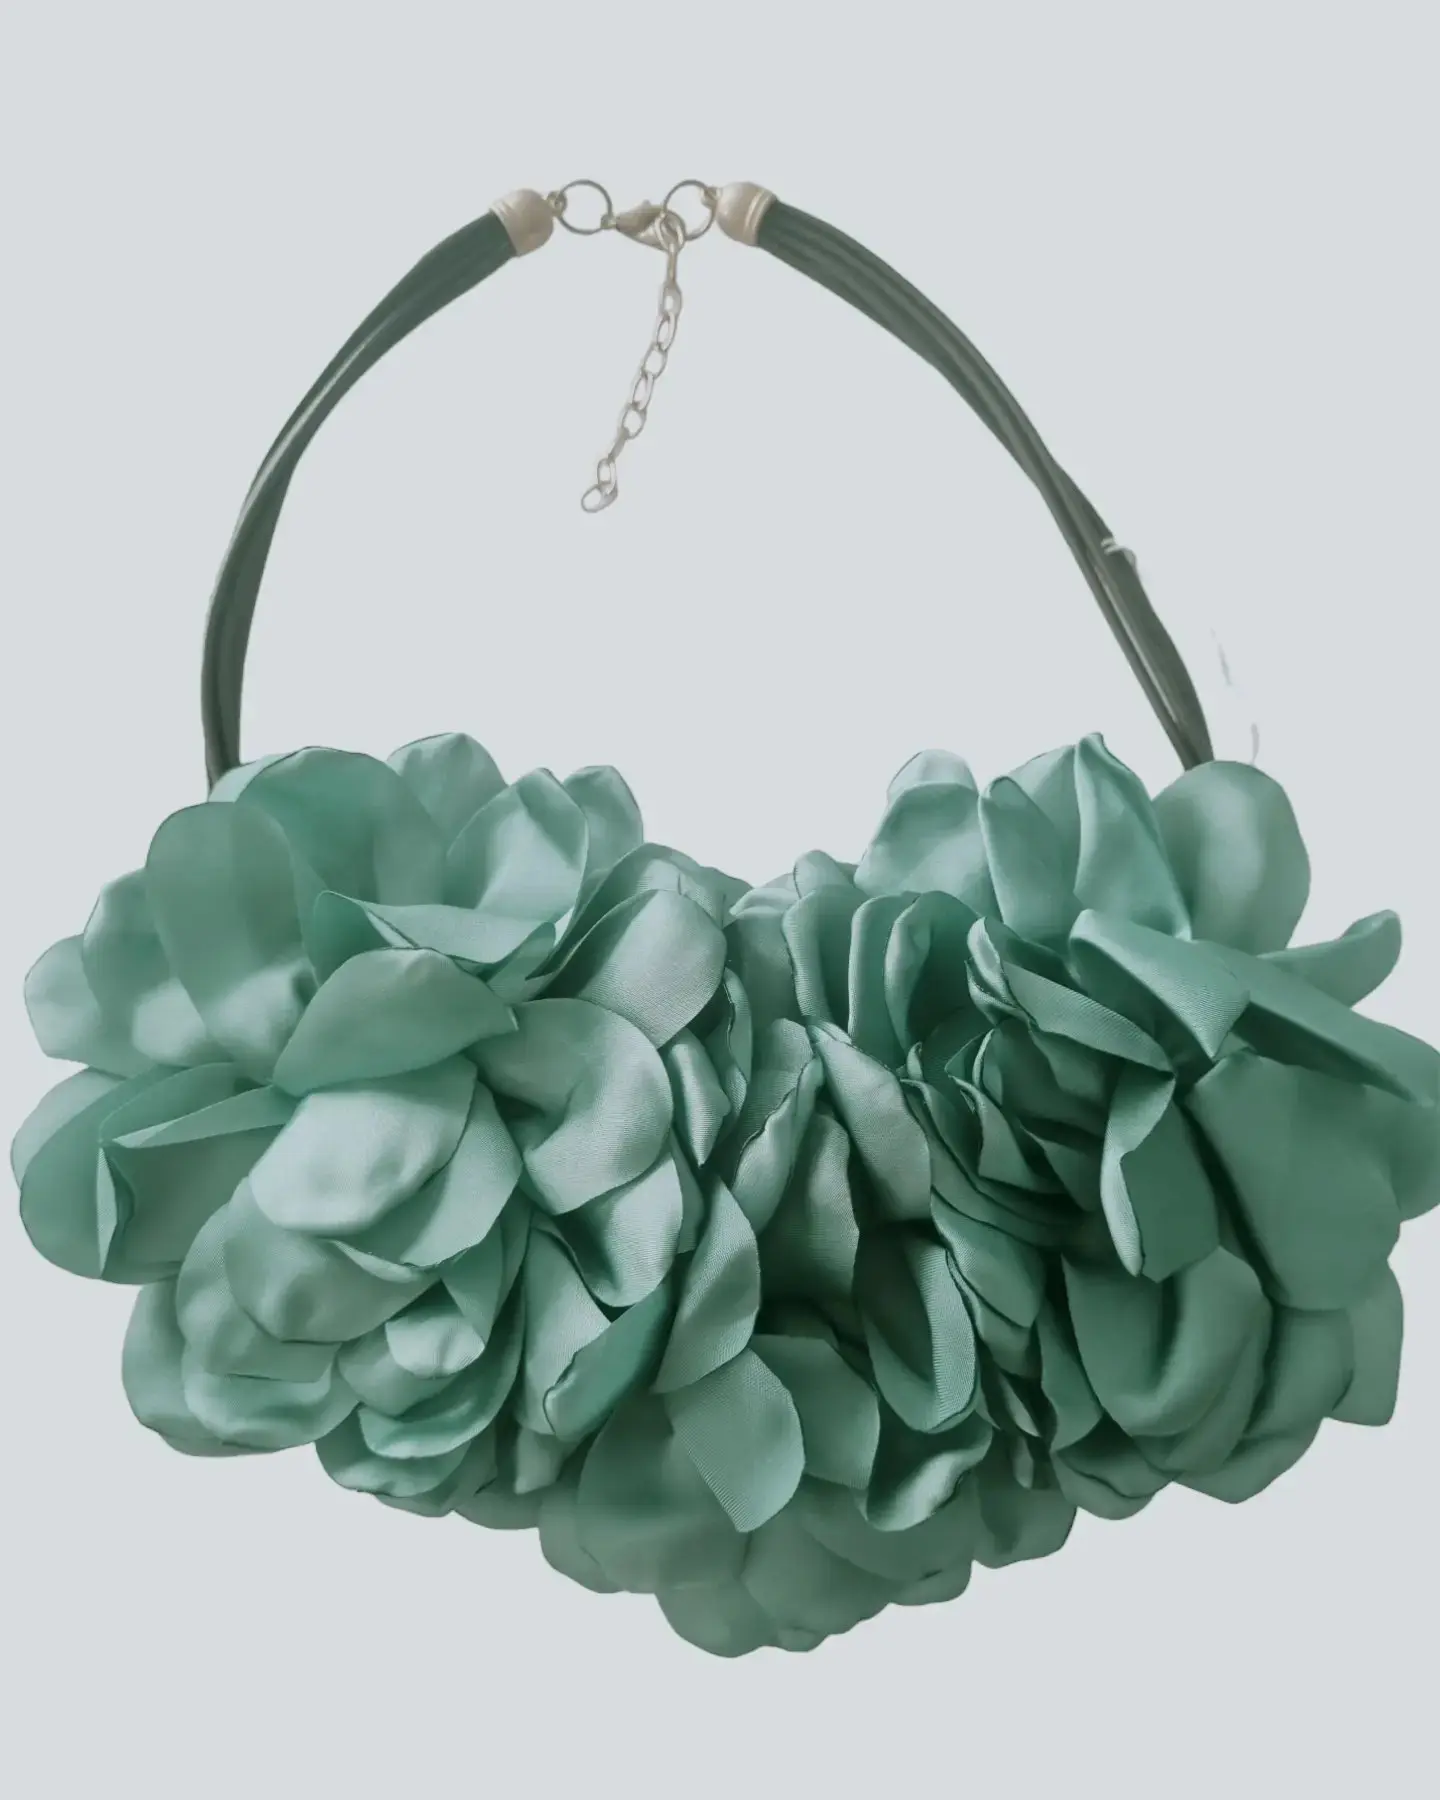 Collana girocollo realizzata con fiori in tessuto. Lunghezza regolabile 58cm Colore verde